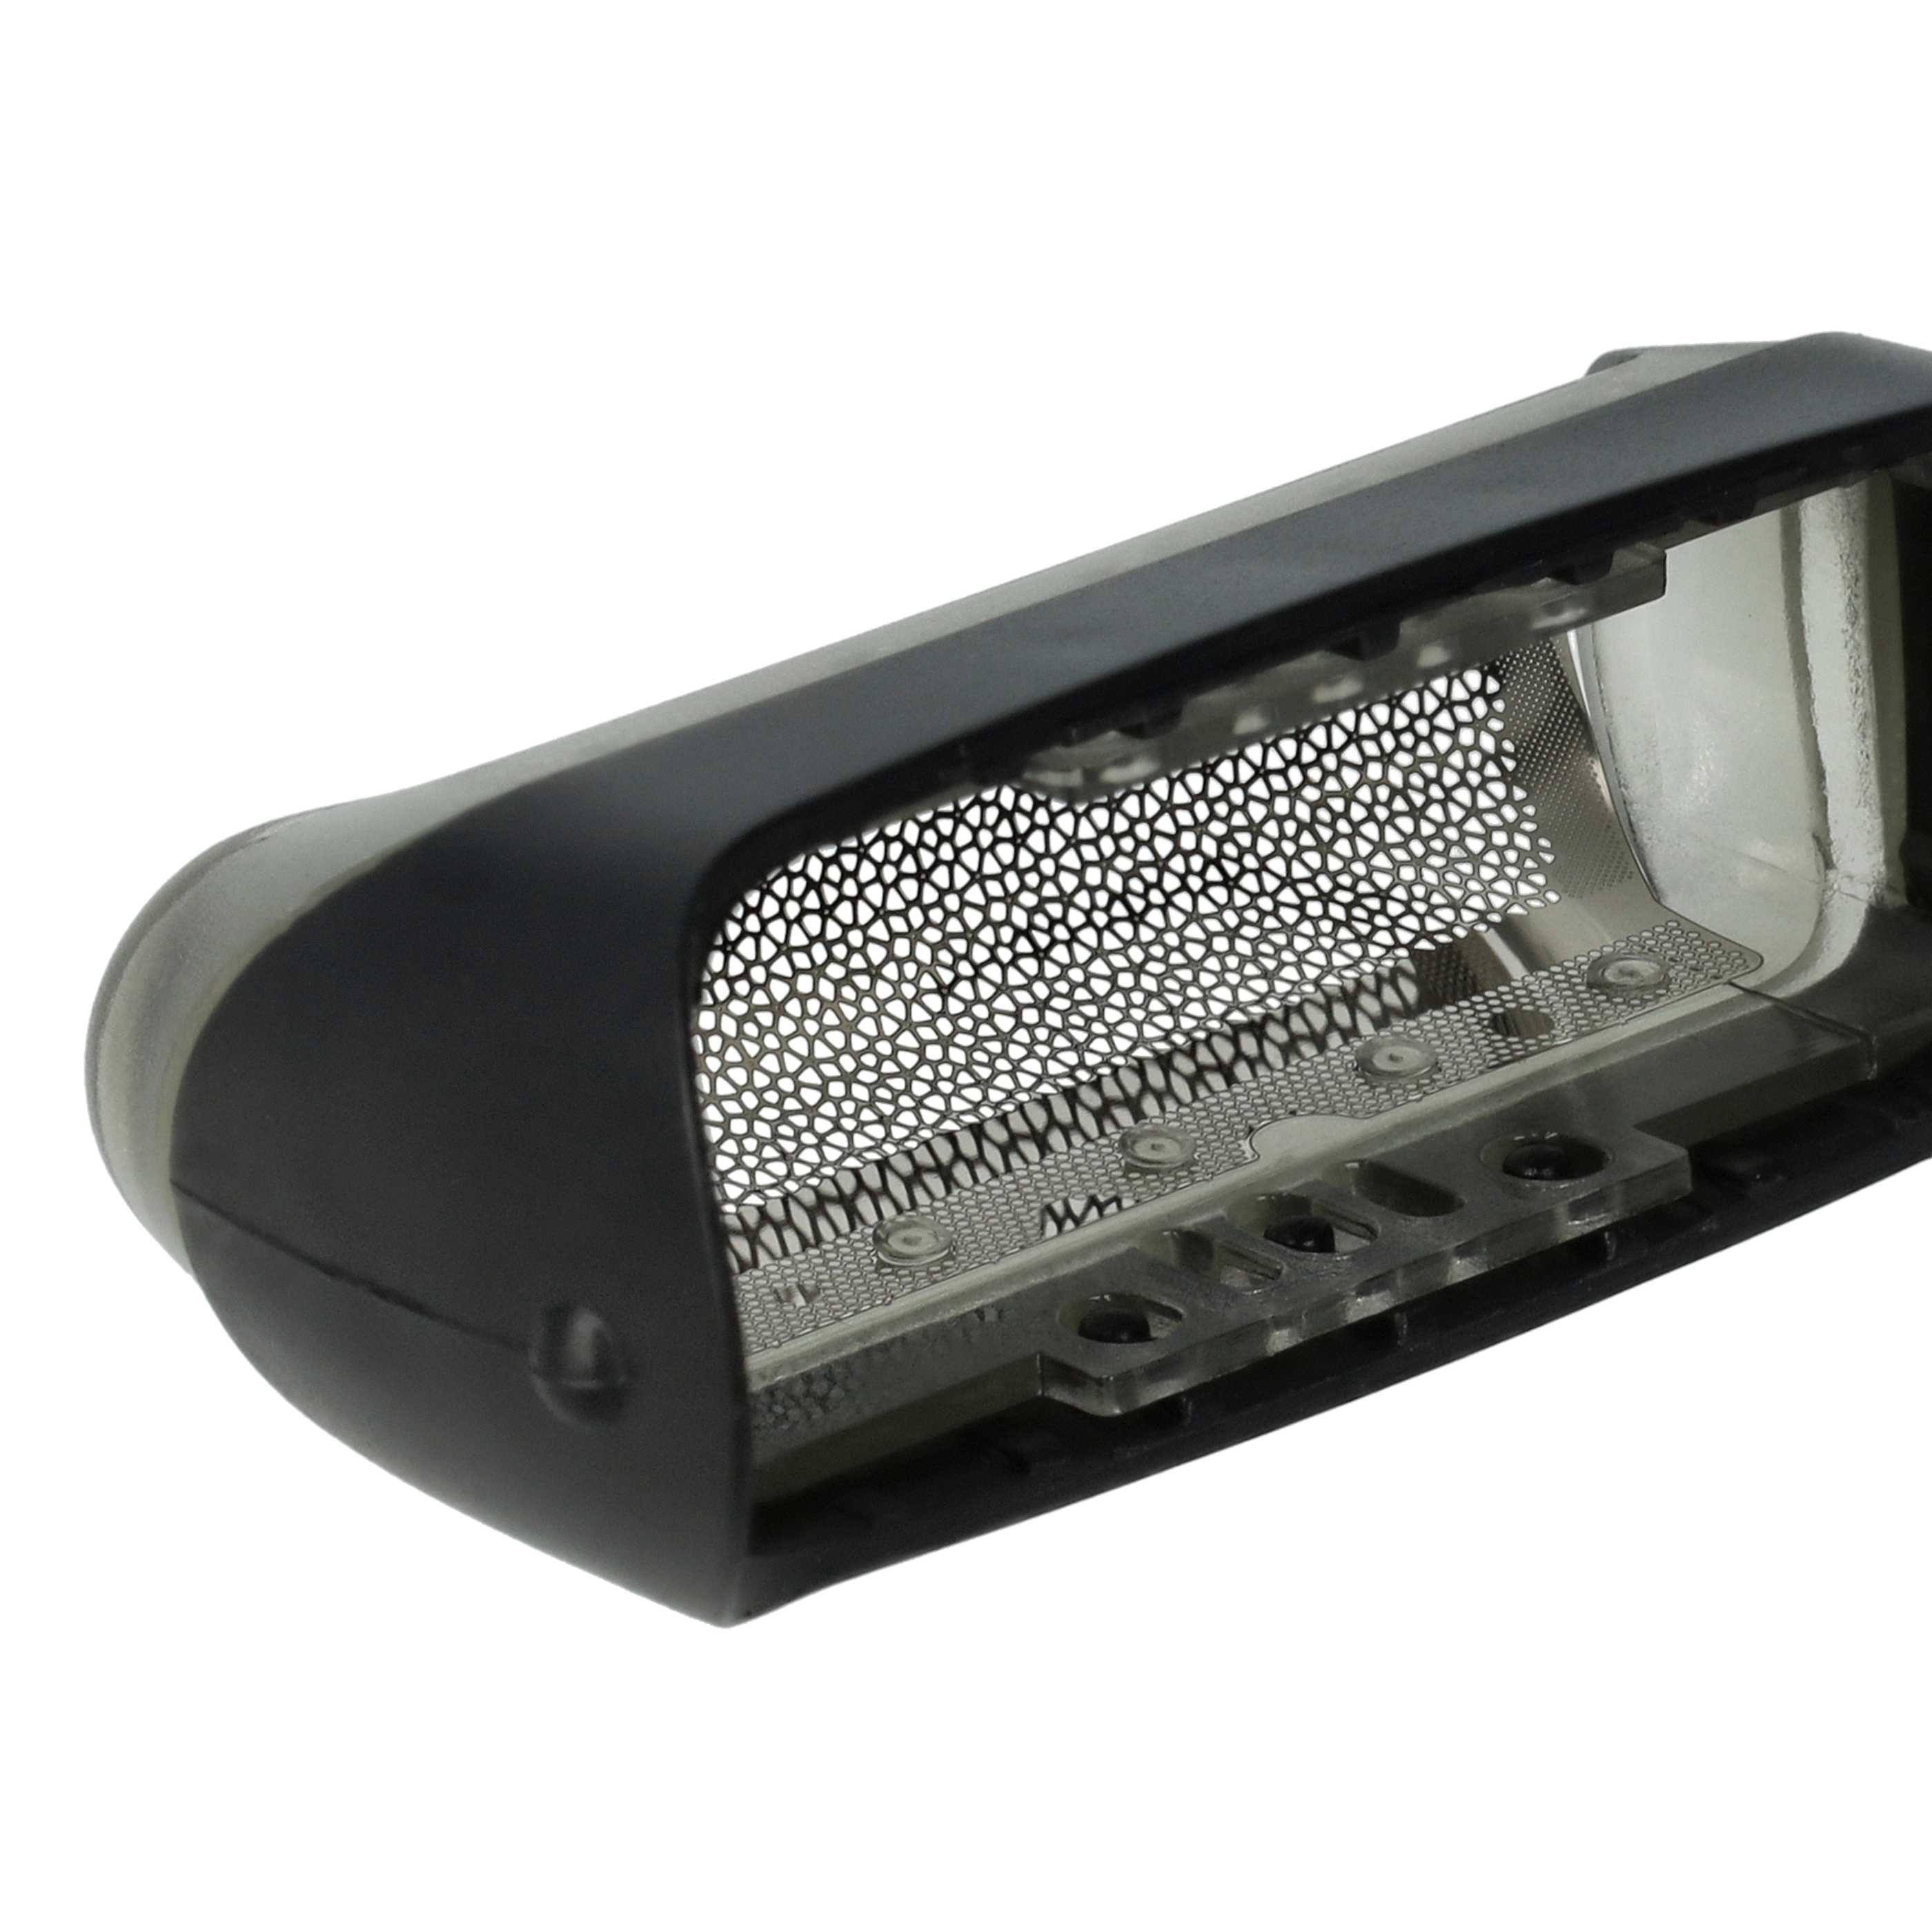 Lámina de corte reemplaza Braun 5733700, 20s, 20B, 10B para afeitadoras Braun - incl. marco, negro/plata